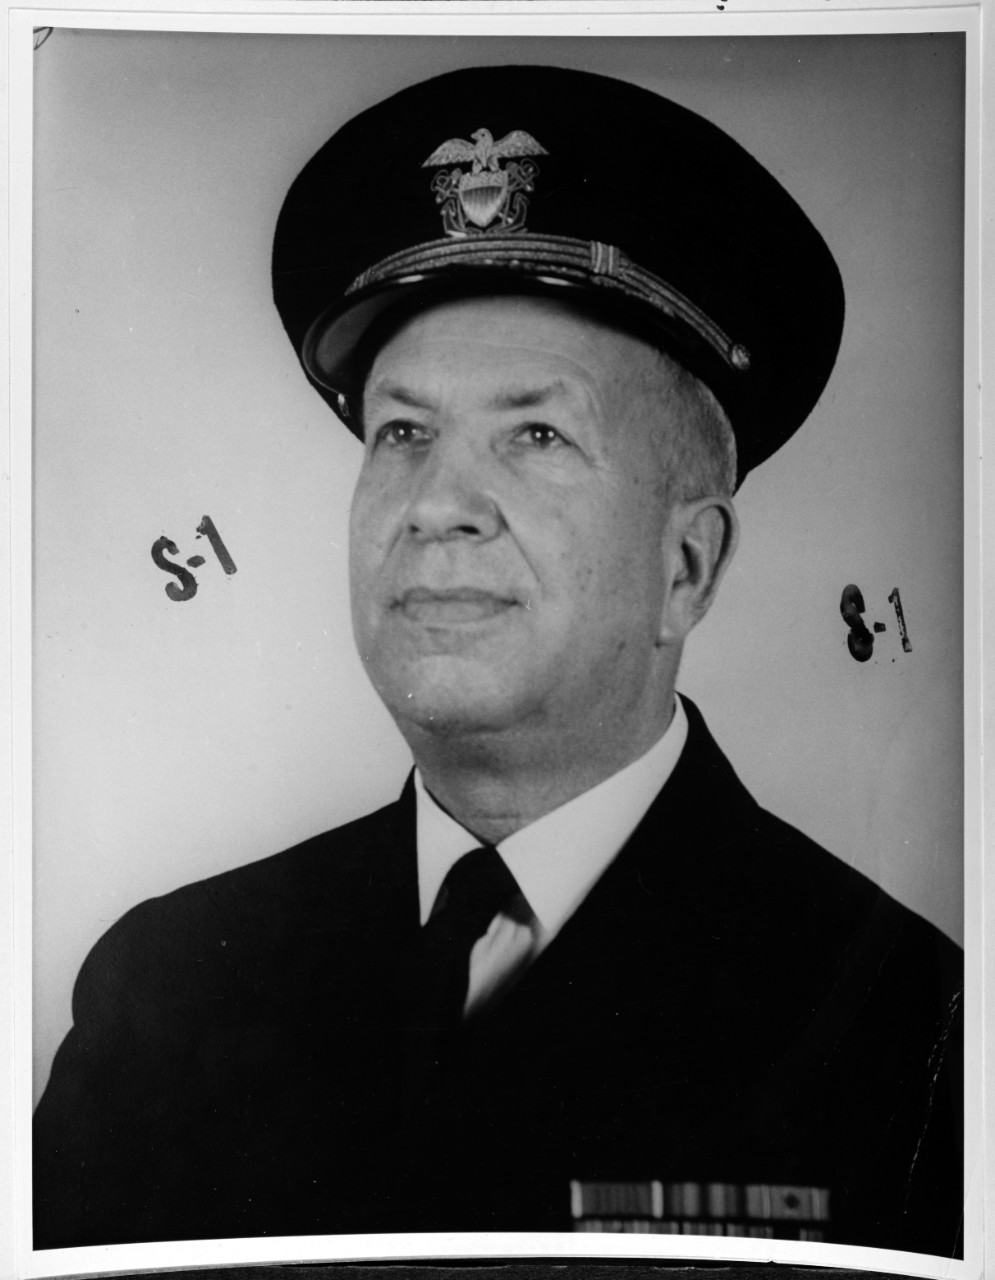 Captain John Bayless Earle, USN